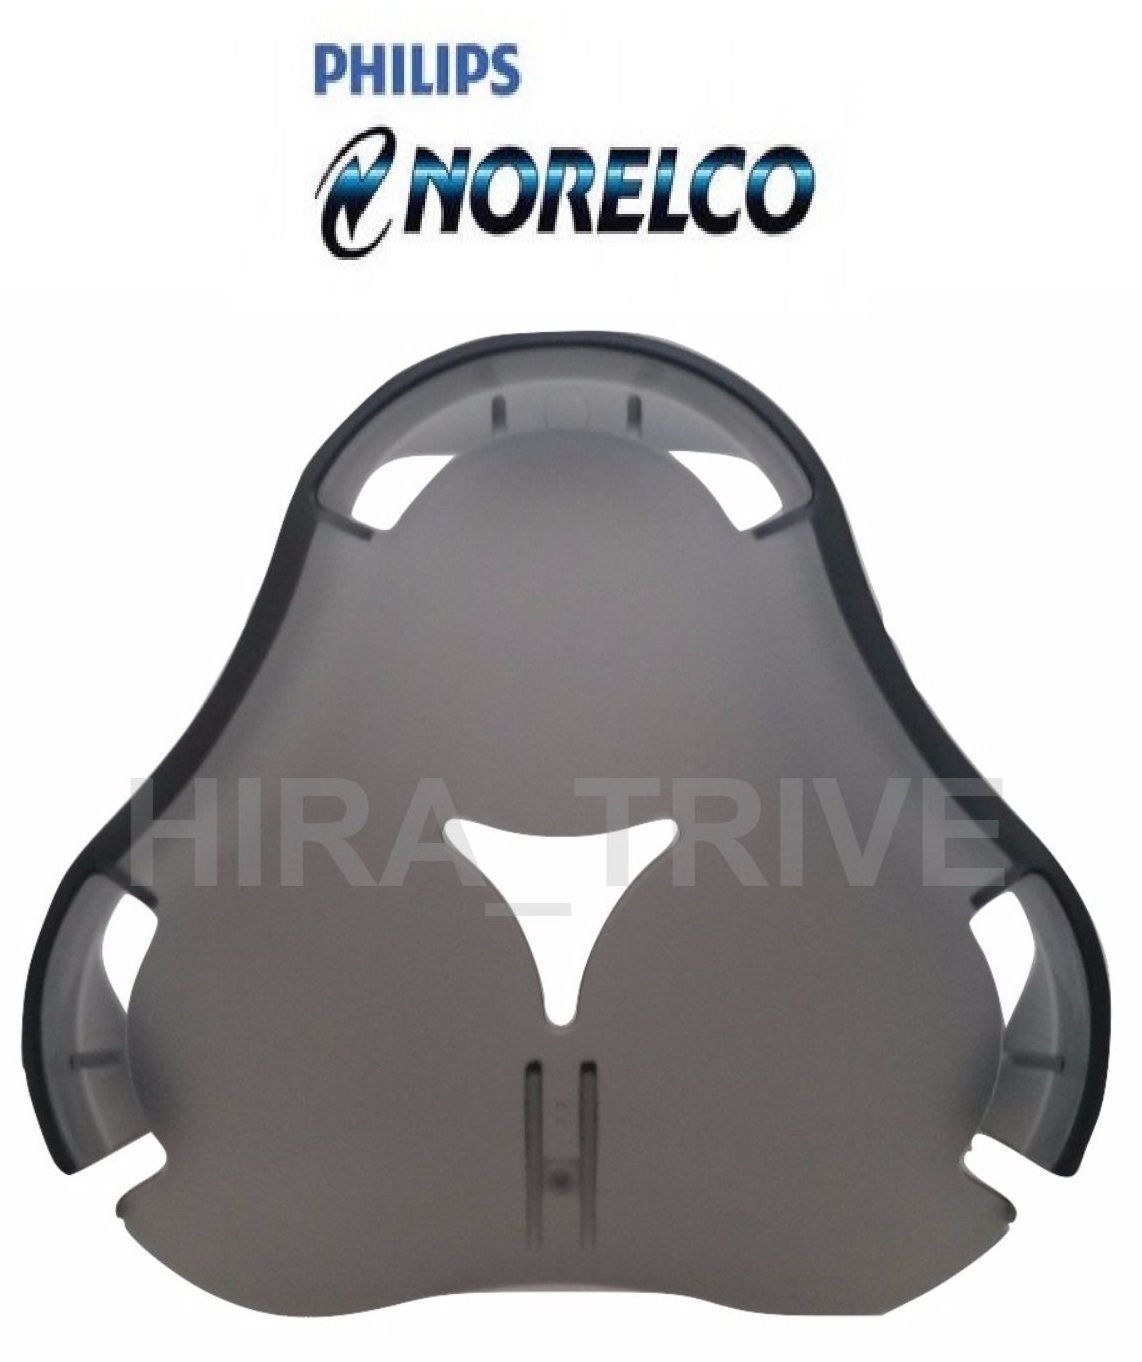 ORIGINAL Philips Norelco RQ12 Plus+ RQ12/62 Shaver Head Cap Protective Cover